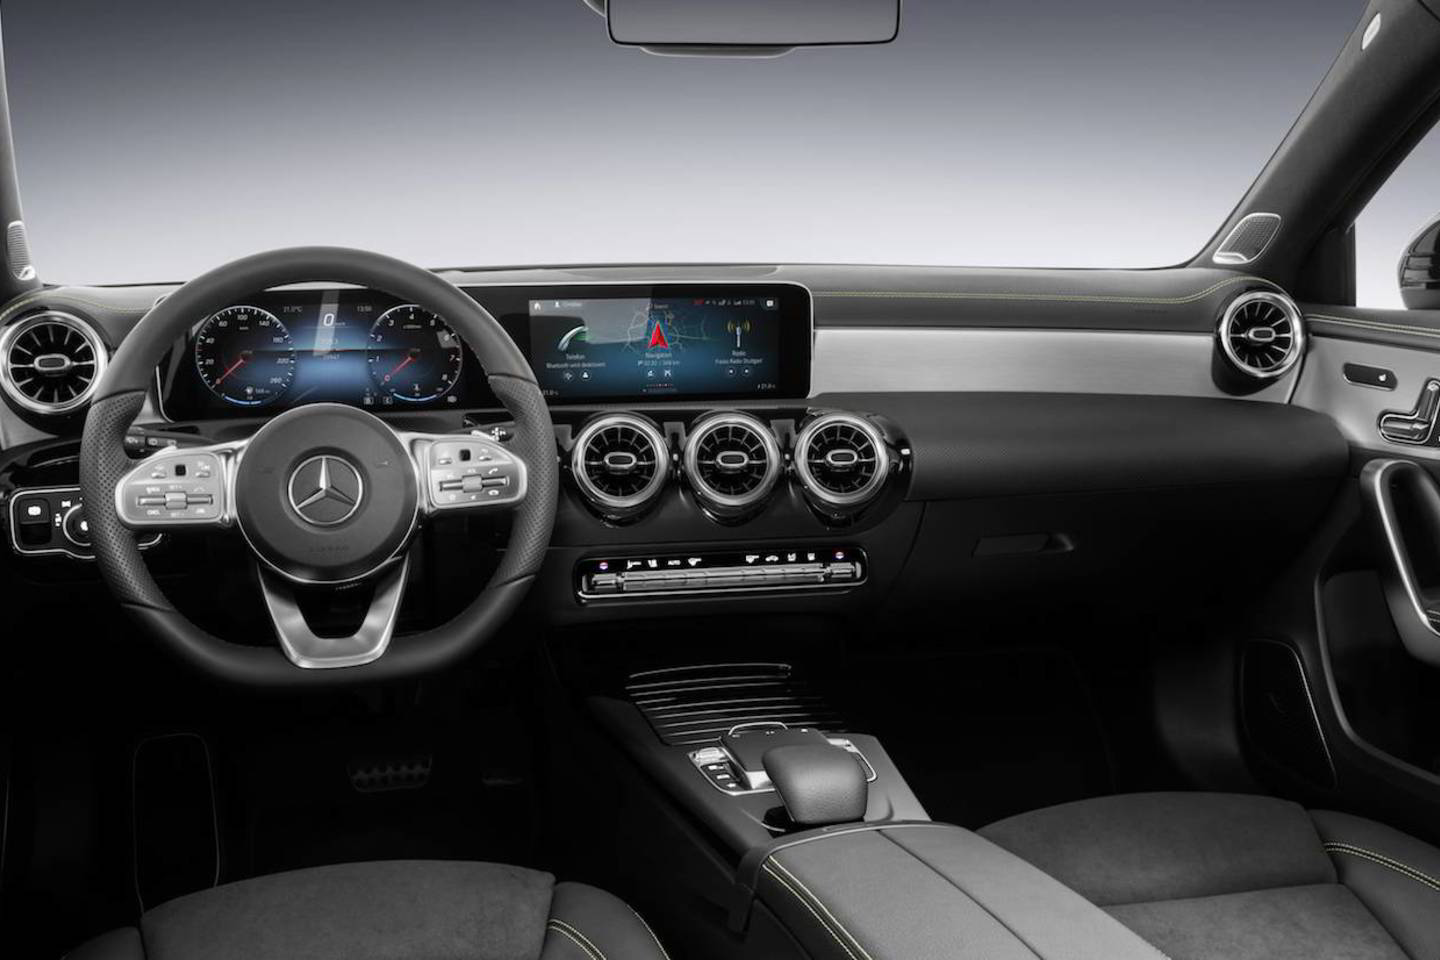 Naujos kartos A klasės „Mercedes-Benz“ gamyba prasidės kovo mėnesį.<br>Gamintojo nuotr.